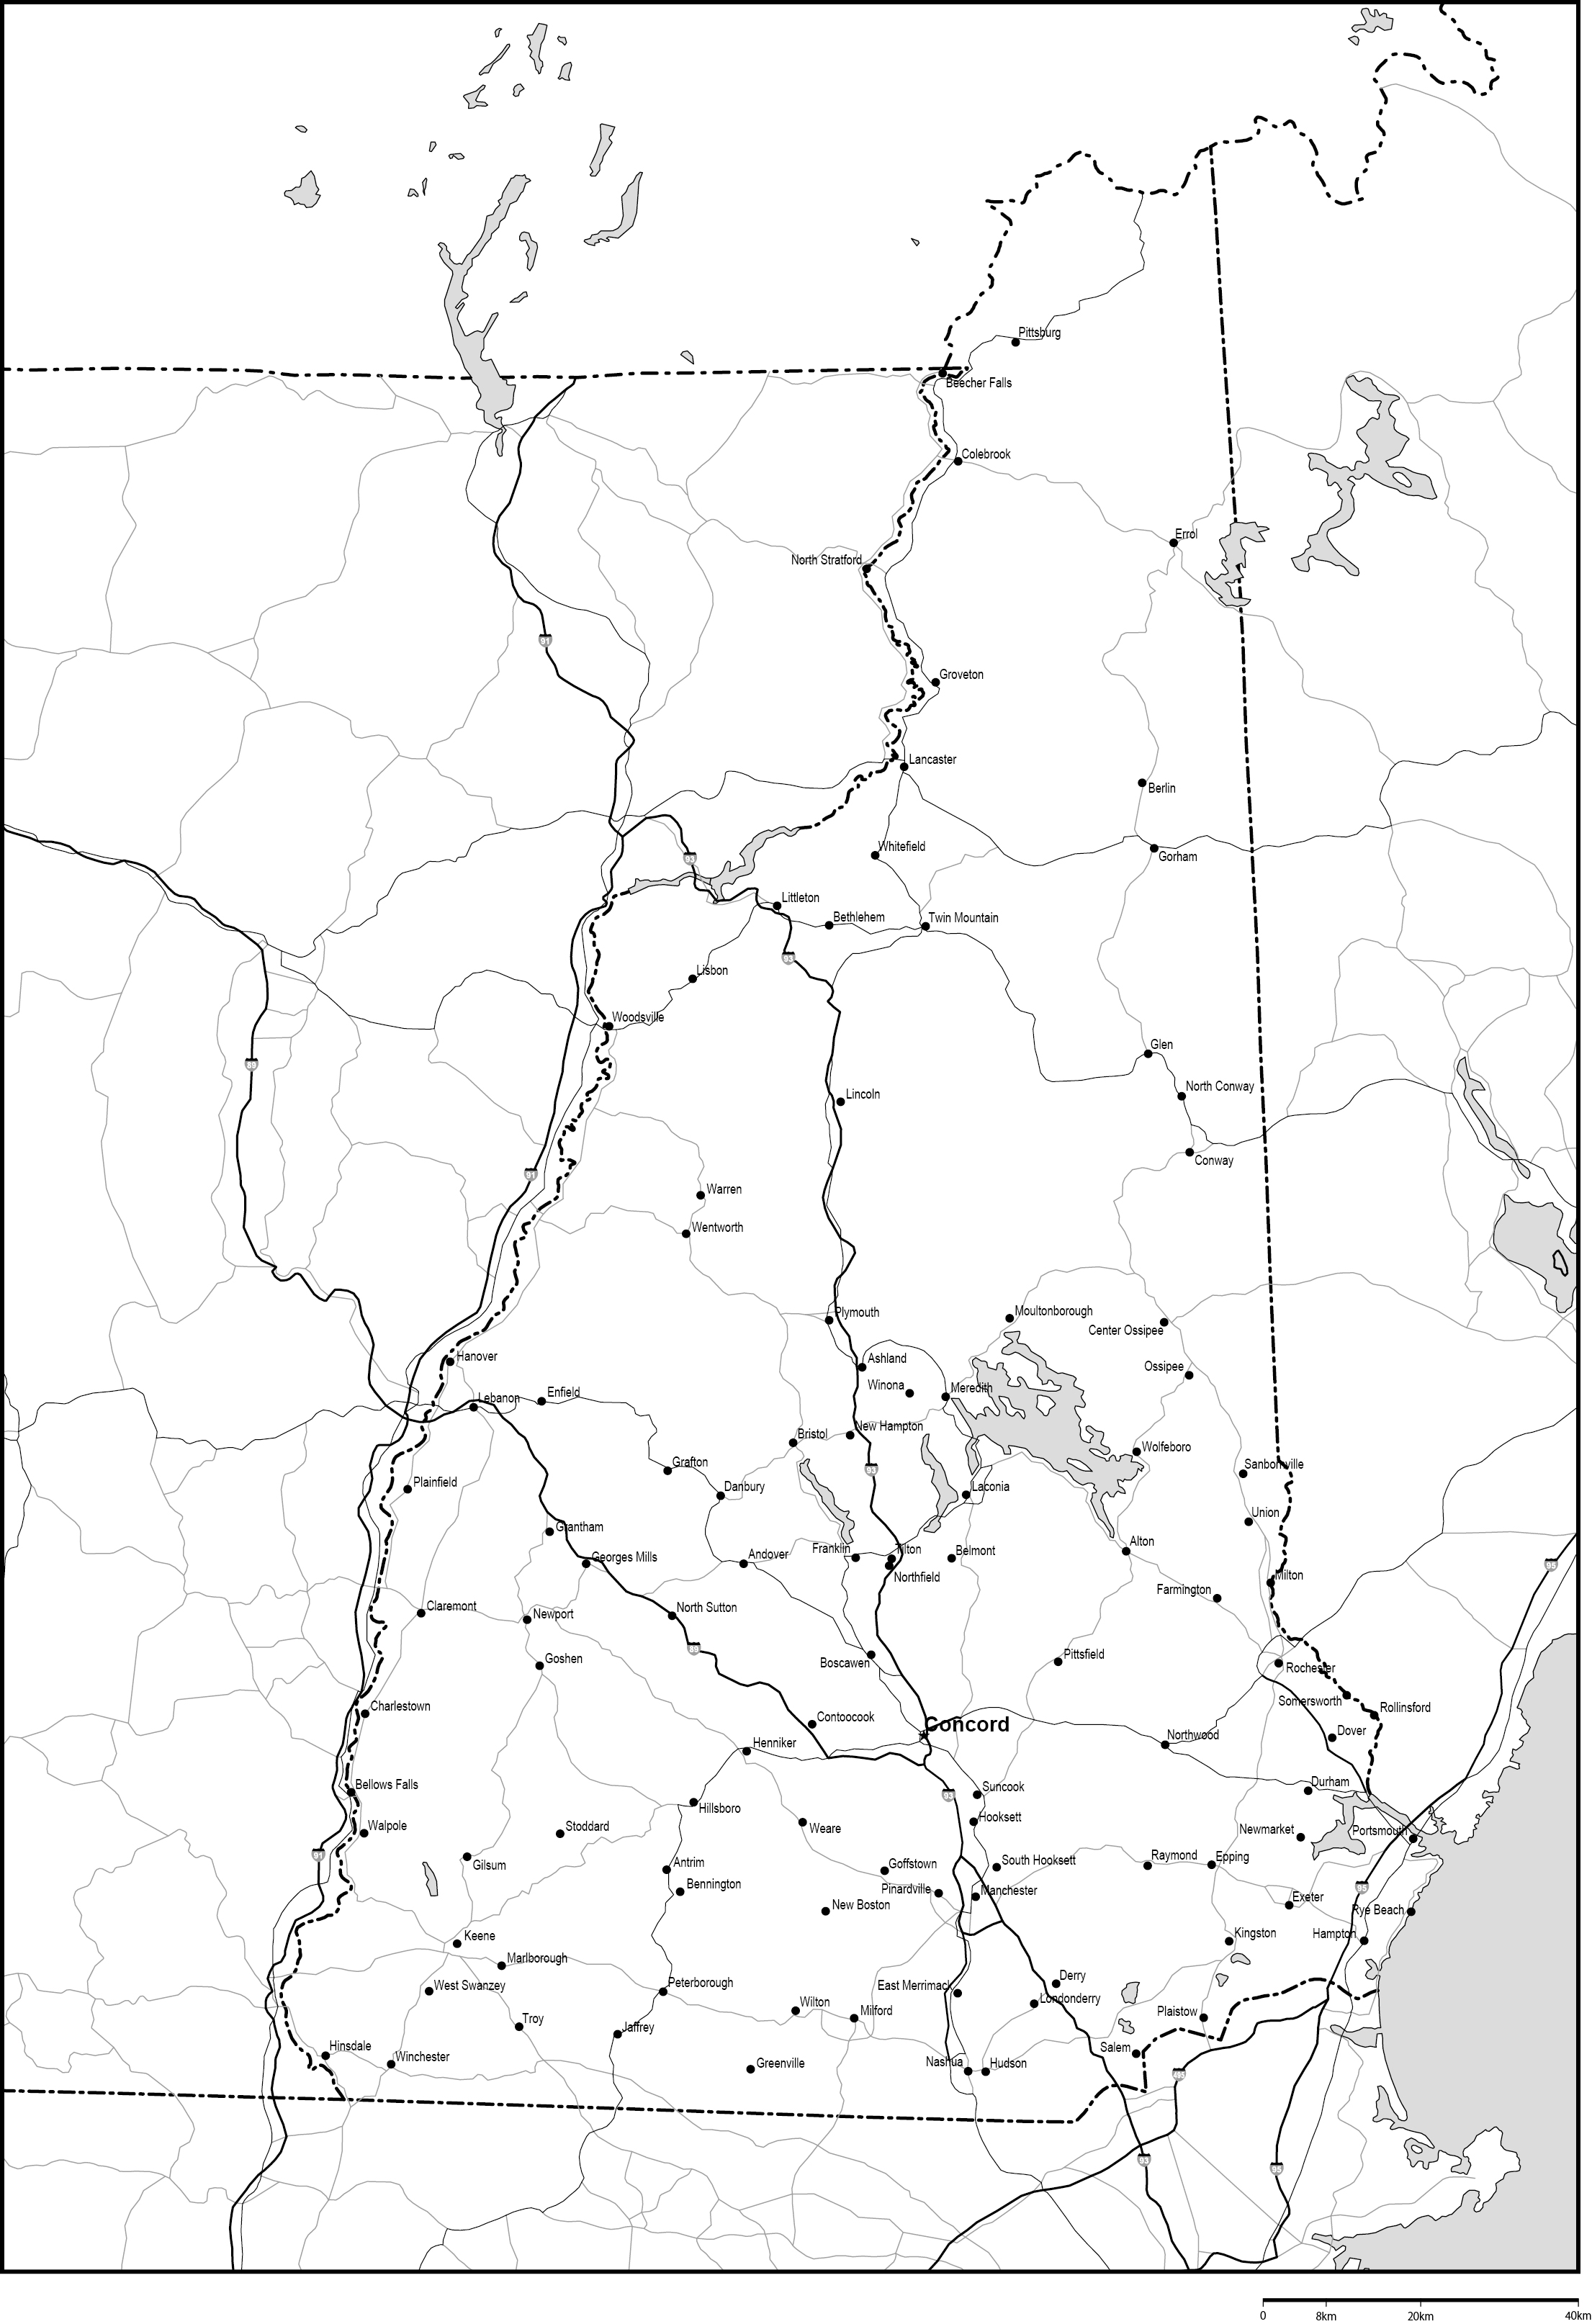 ニューハンプシャー州白地図州都・主な都市・道路あり(英語)フリーデータの画像